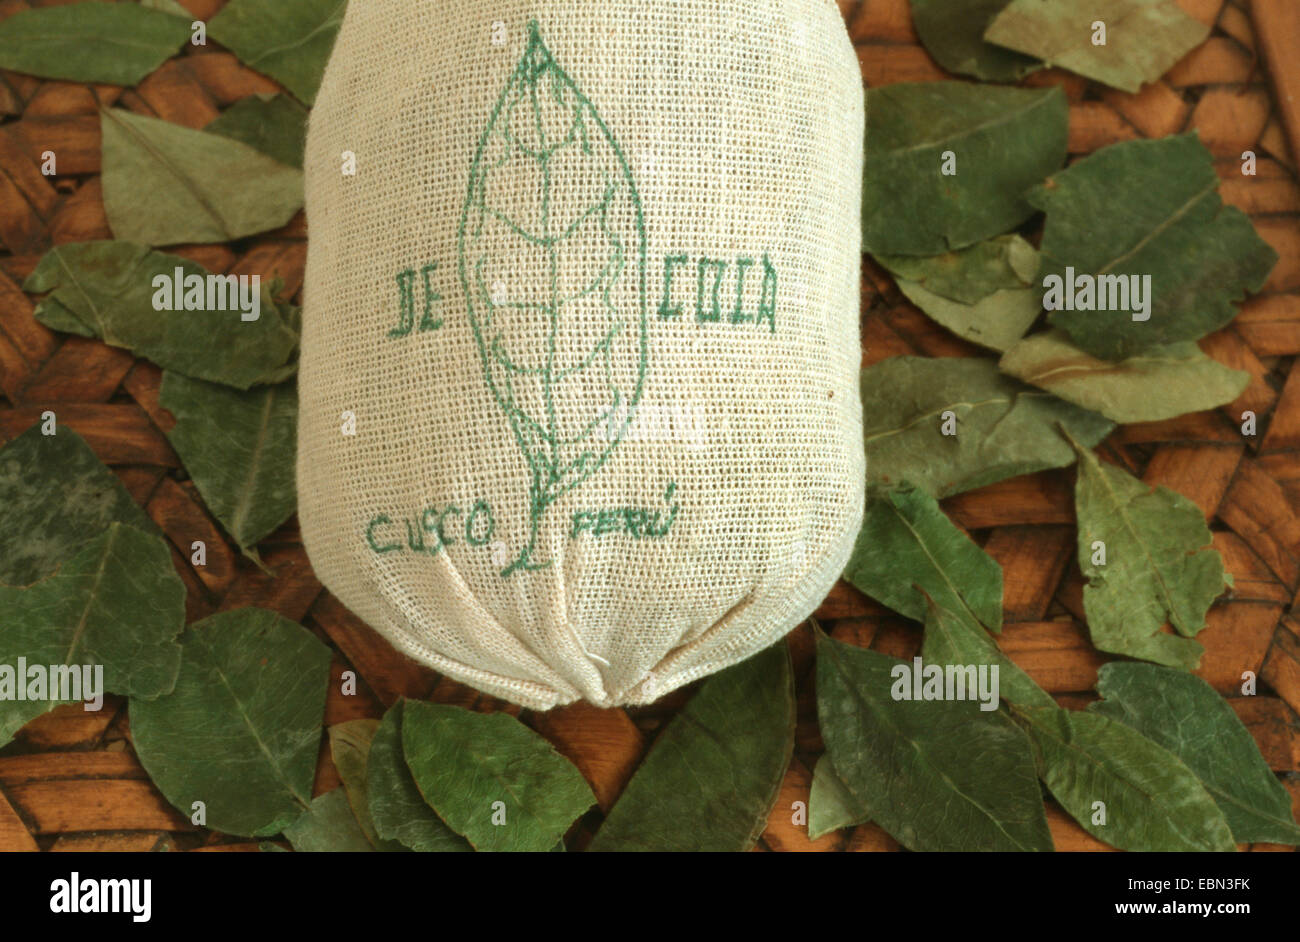 cocaine, Bolivian coca (Erythroxylon coca, Erythroxylum coca), dried leaves des cocaine Stock Photo